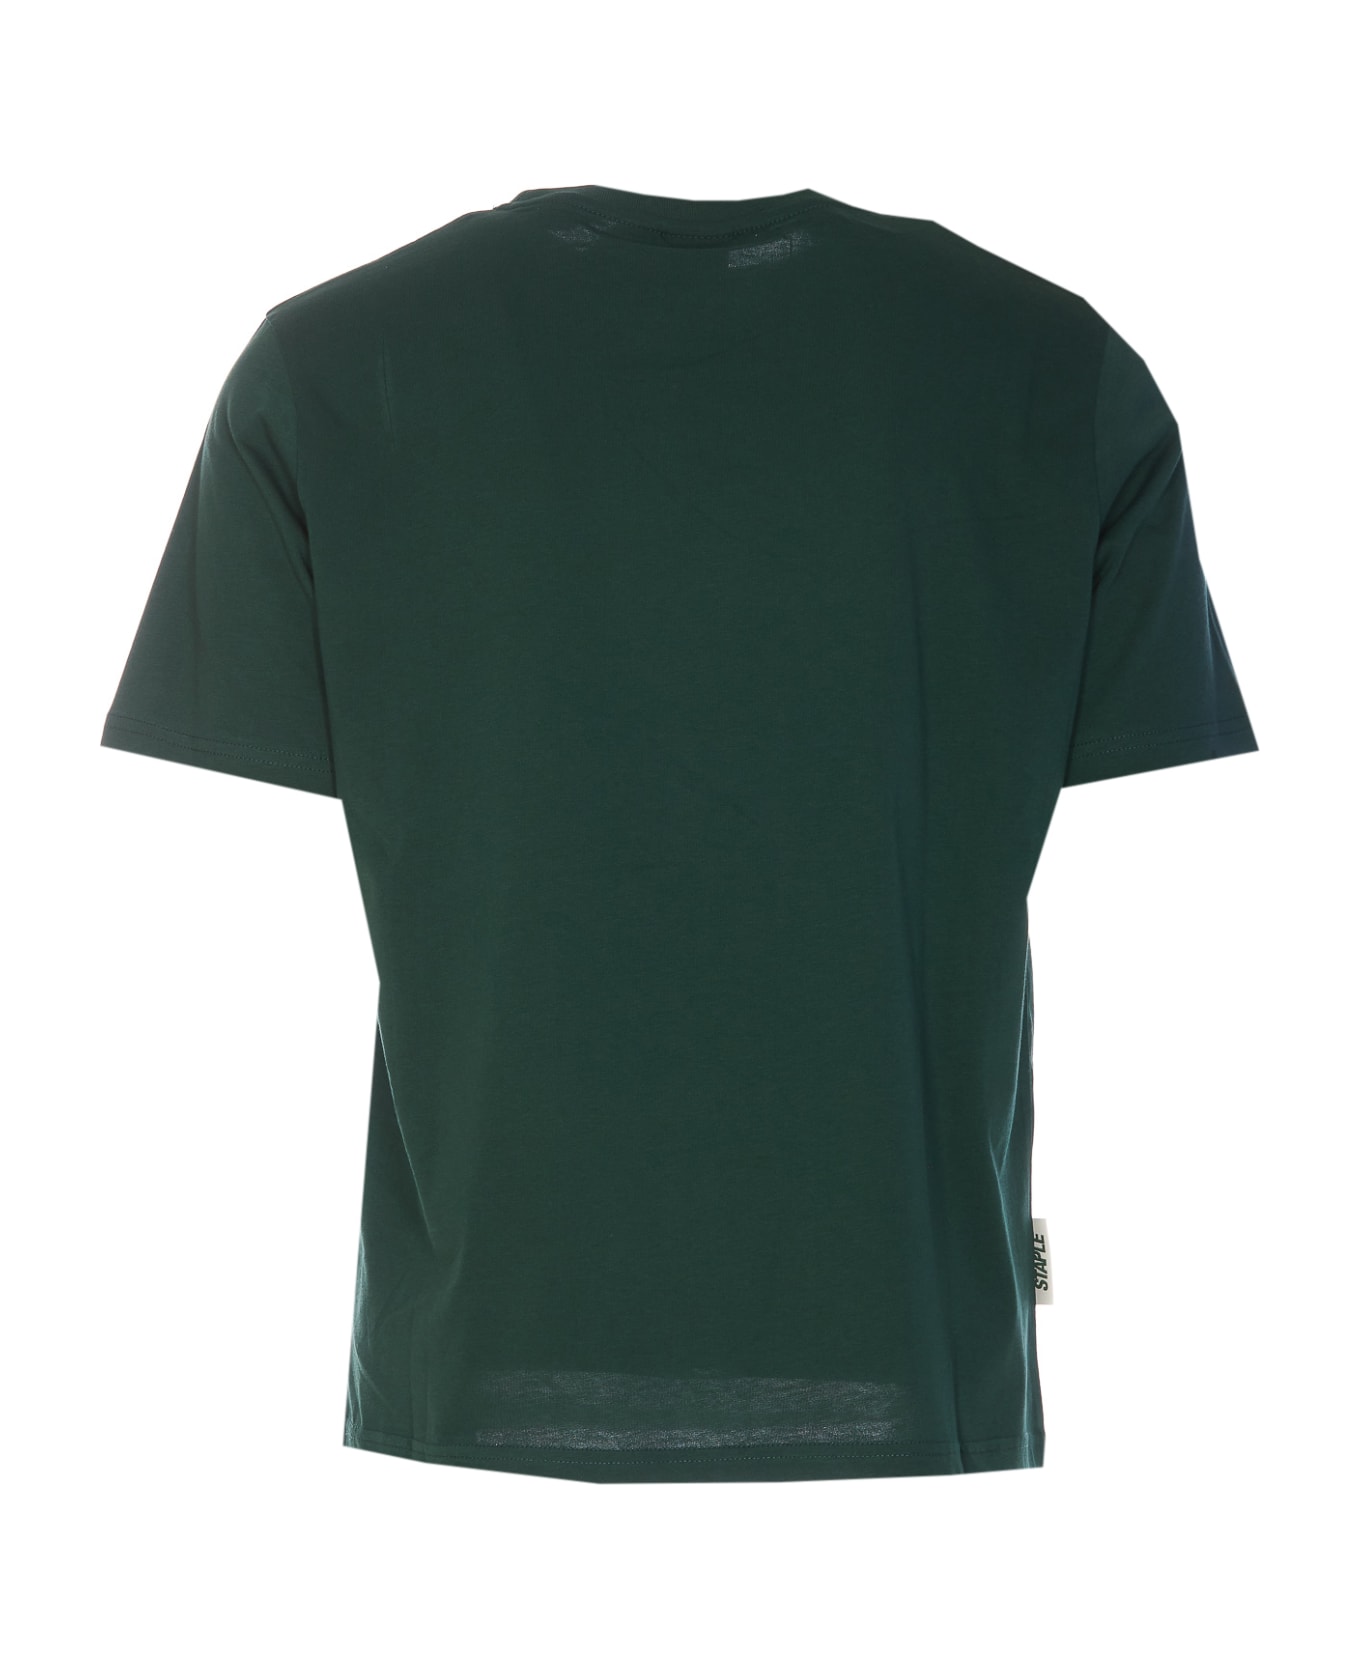 Autry Staple T-shirt - Green